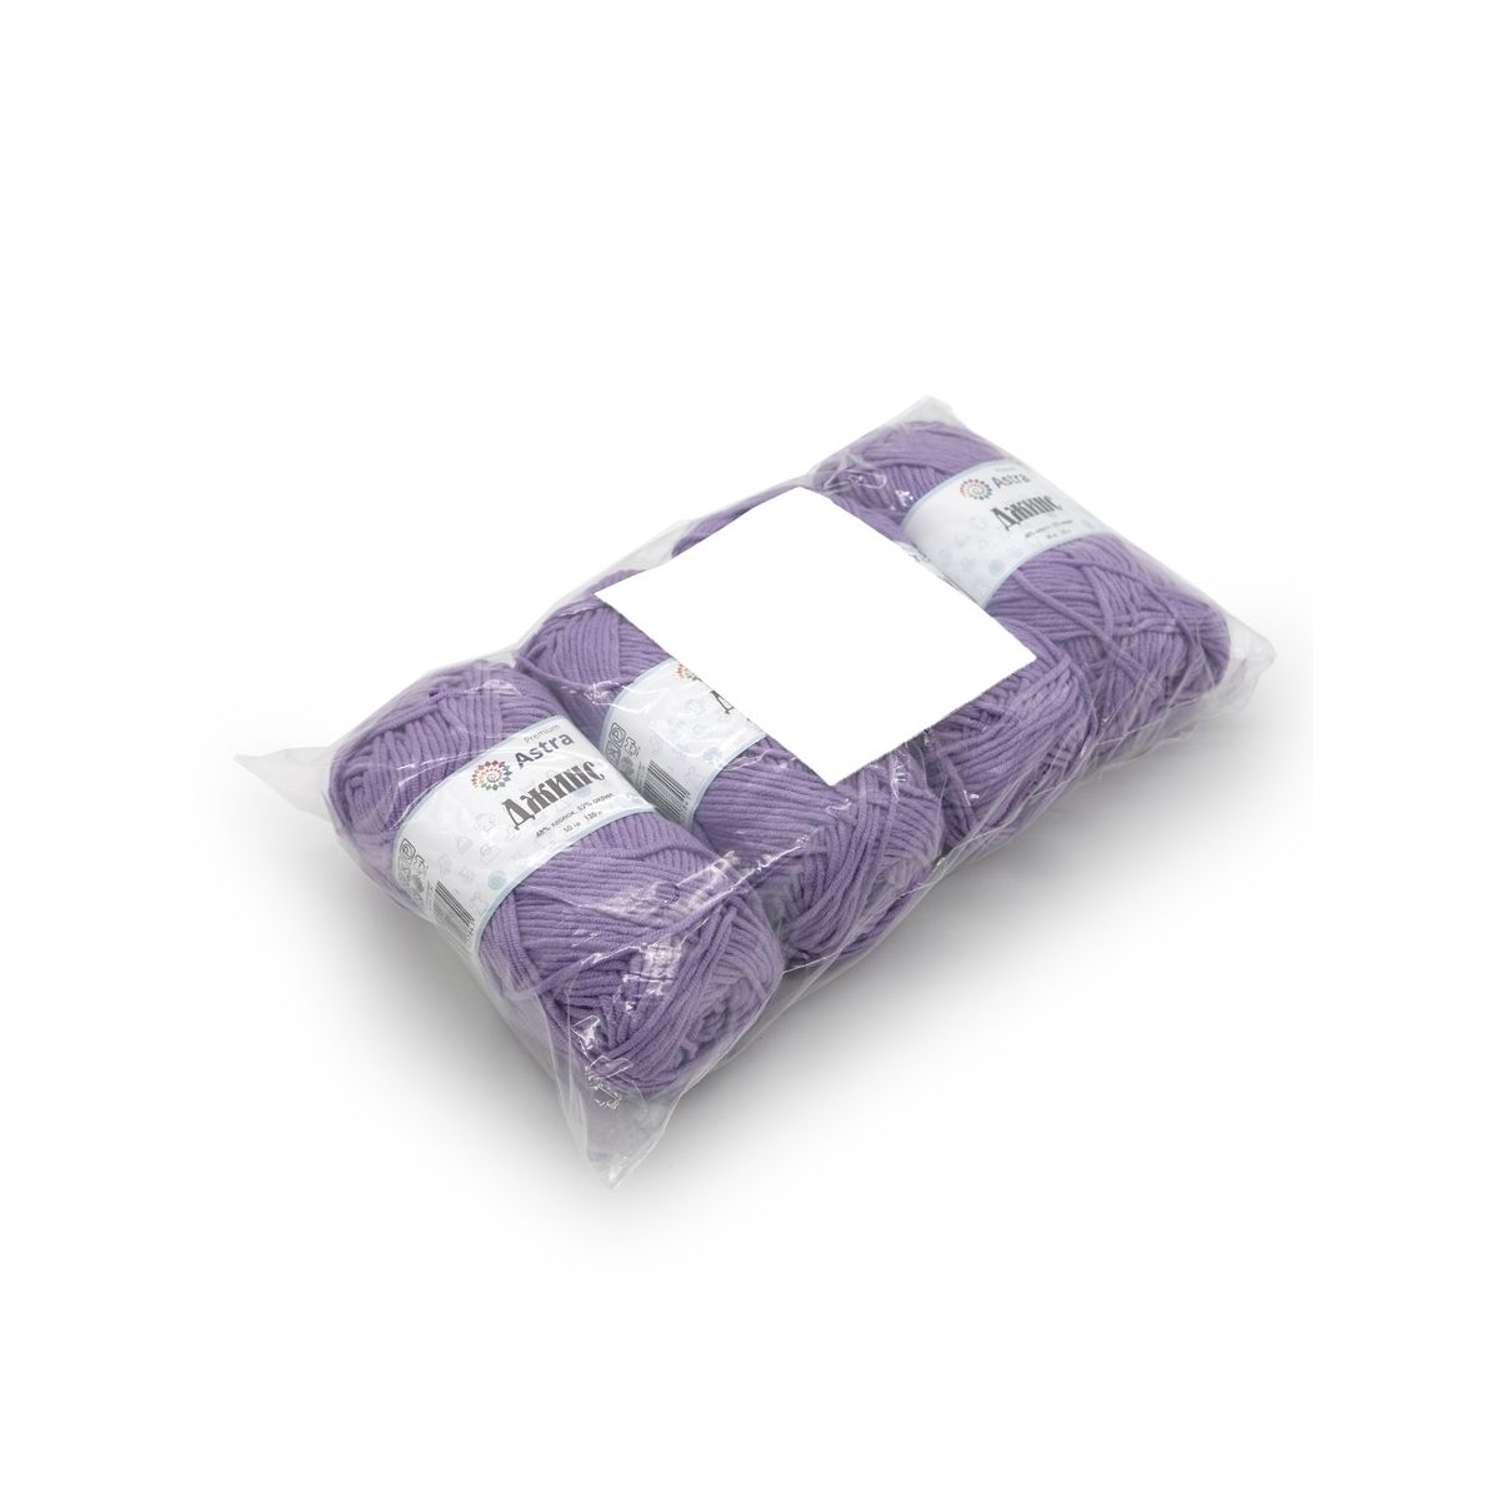 Пряжа для вязания Astra Premium джинс для повседневной одежды акрил хлопок 50 гр 135 м 750 фиолетовый 4 мотка - фото 13